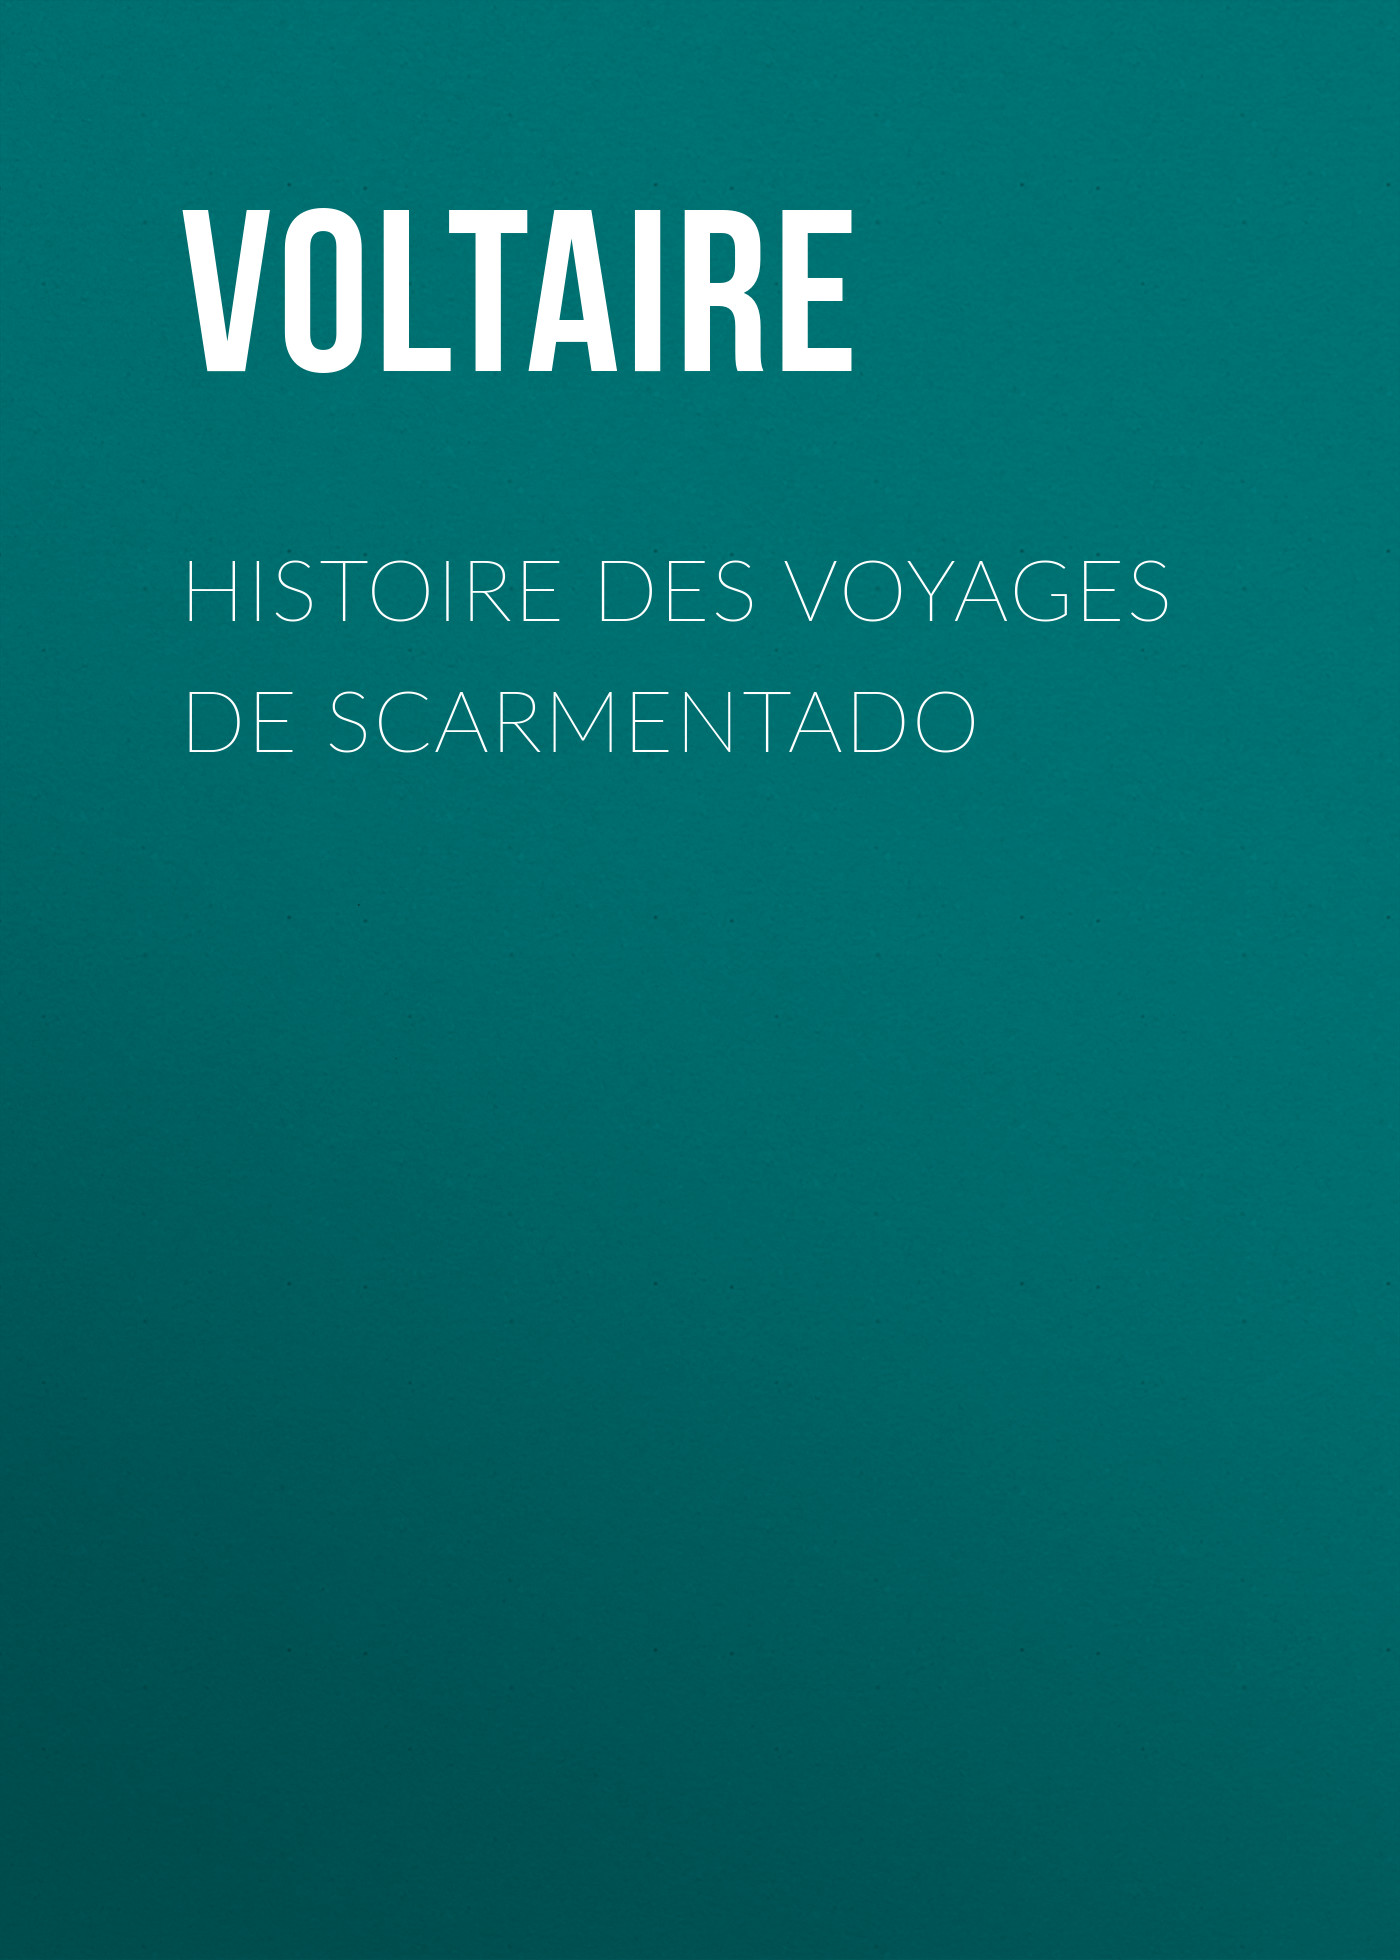 Книга Histoire des voyages de Scarmentado из серии , созданная  Voltaire, может относится к жанру Литература 18 века, Зарубежная классика. Стоимость электронной книги Histoire des voyages de Scarmentado с идентификатором 25561036 составляет 0 руб.